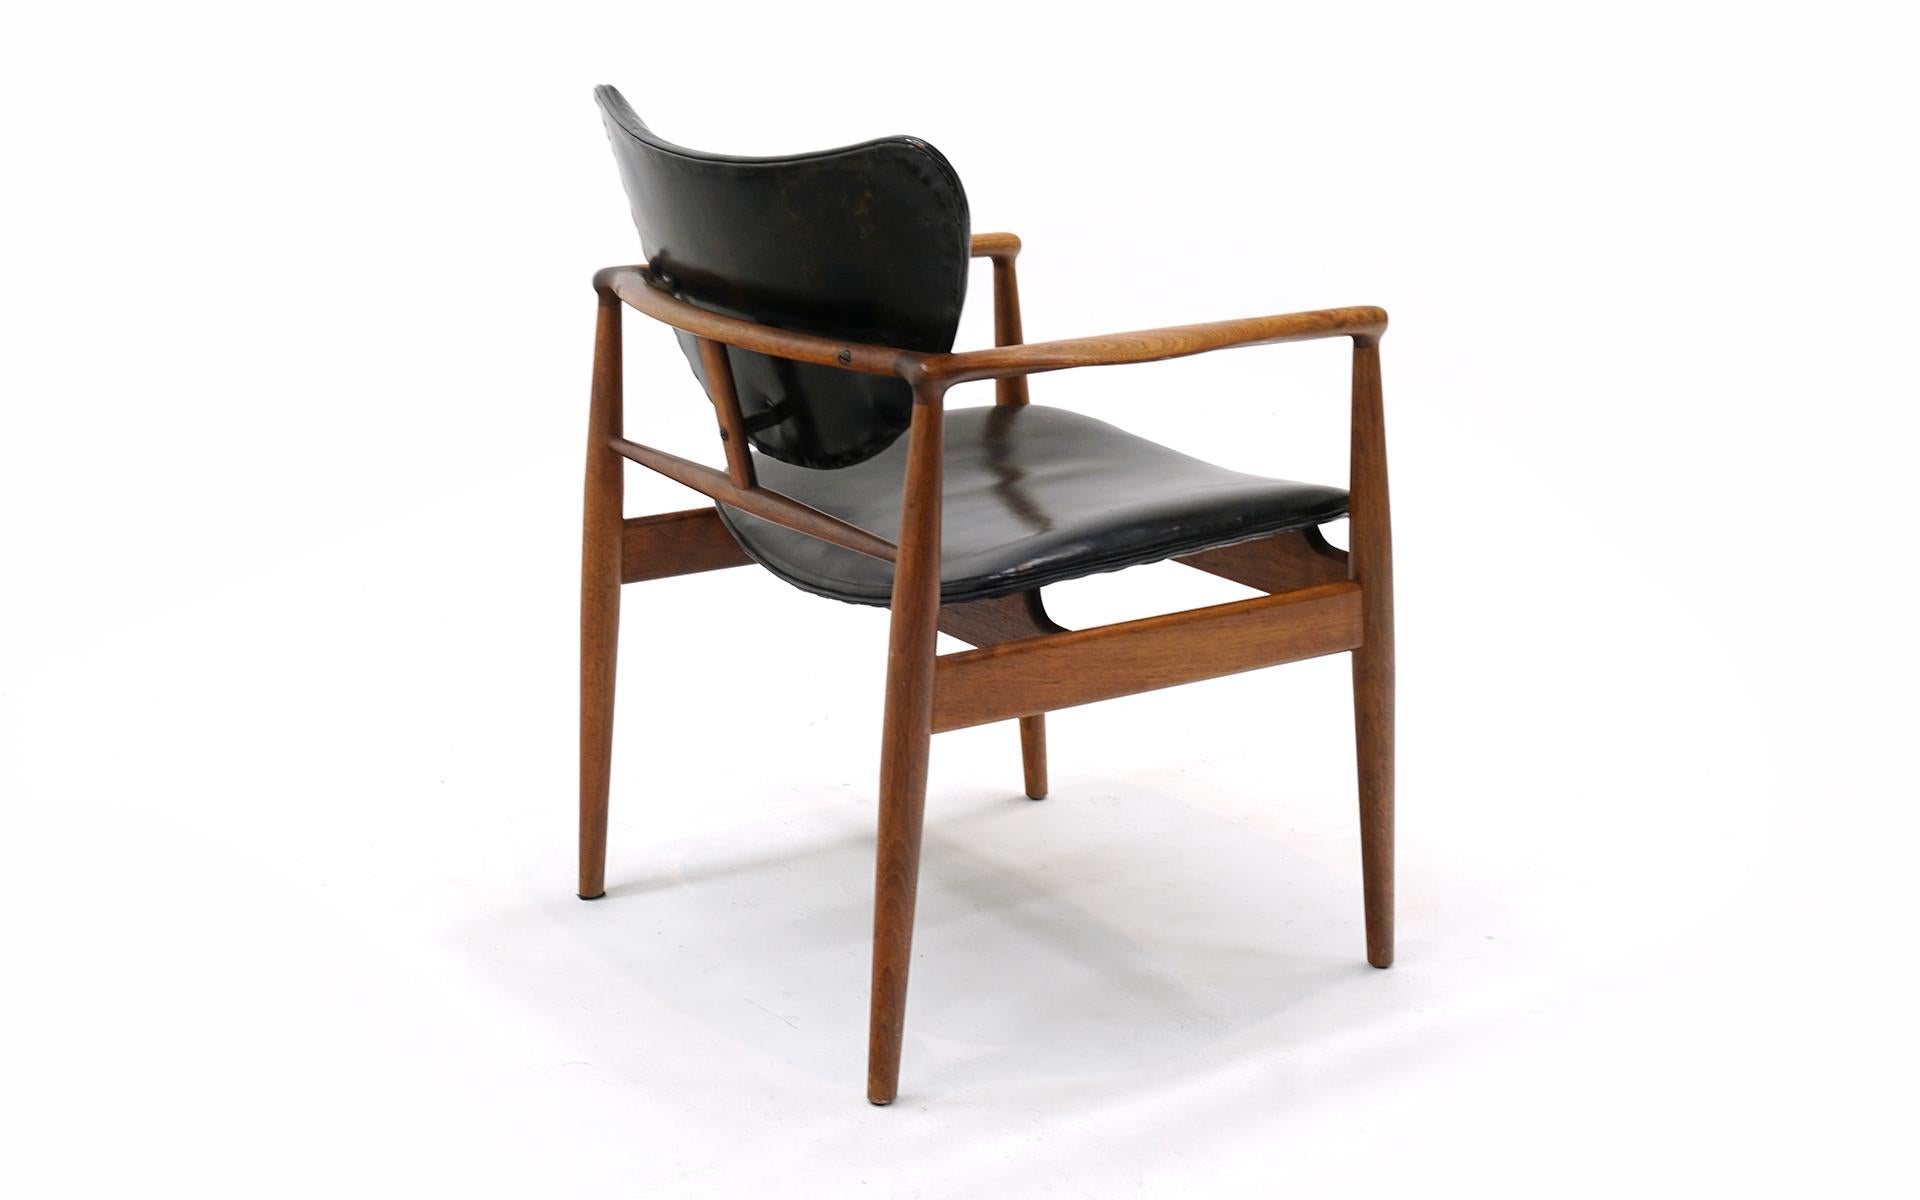 Original Finn Juhl Model 48 Chair for Baker. Black Leather, Teak Frame. Signed. 1